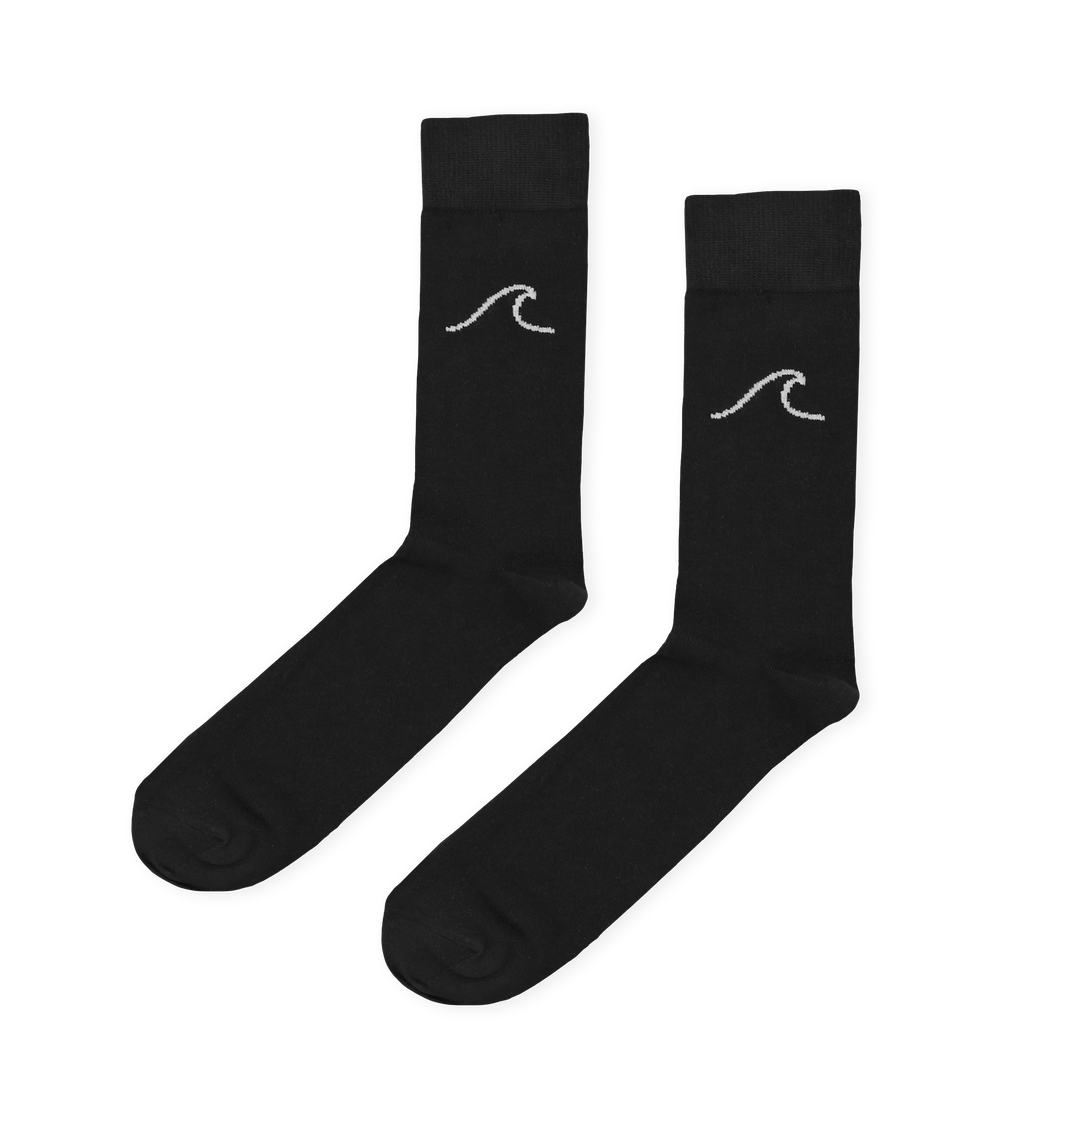 Surf Men's Bamboo Socks Pair